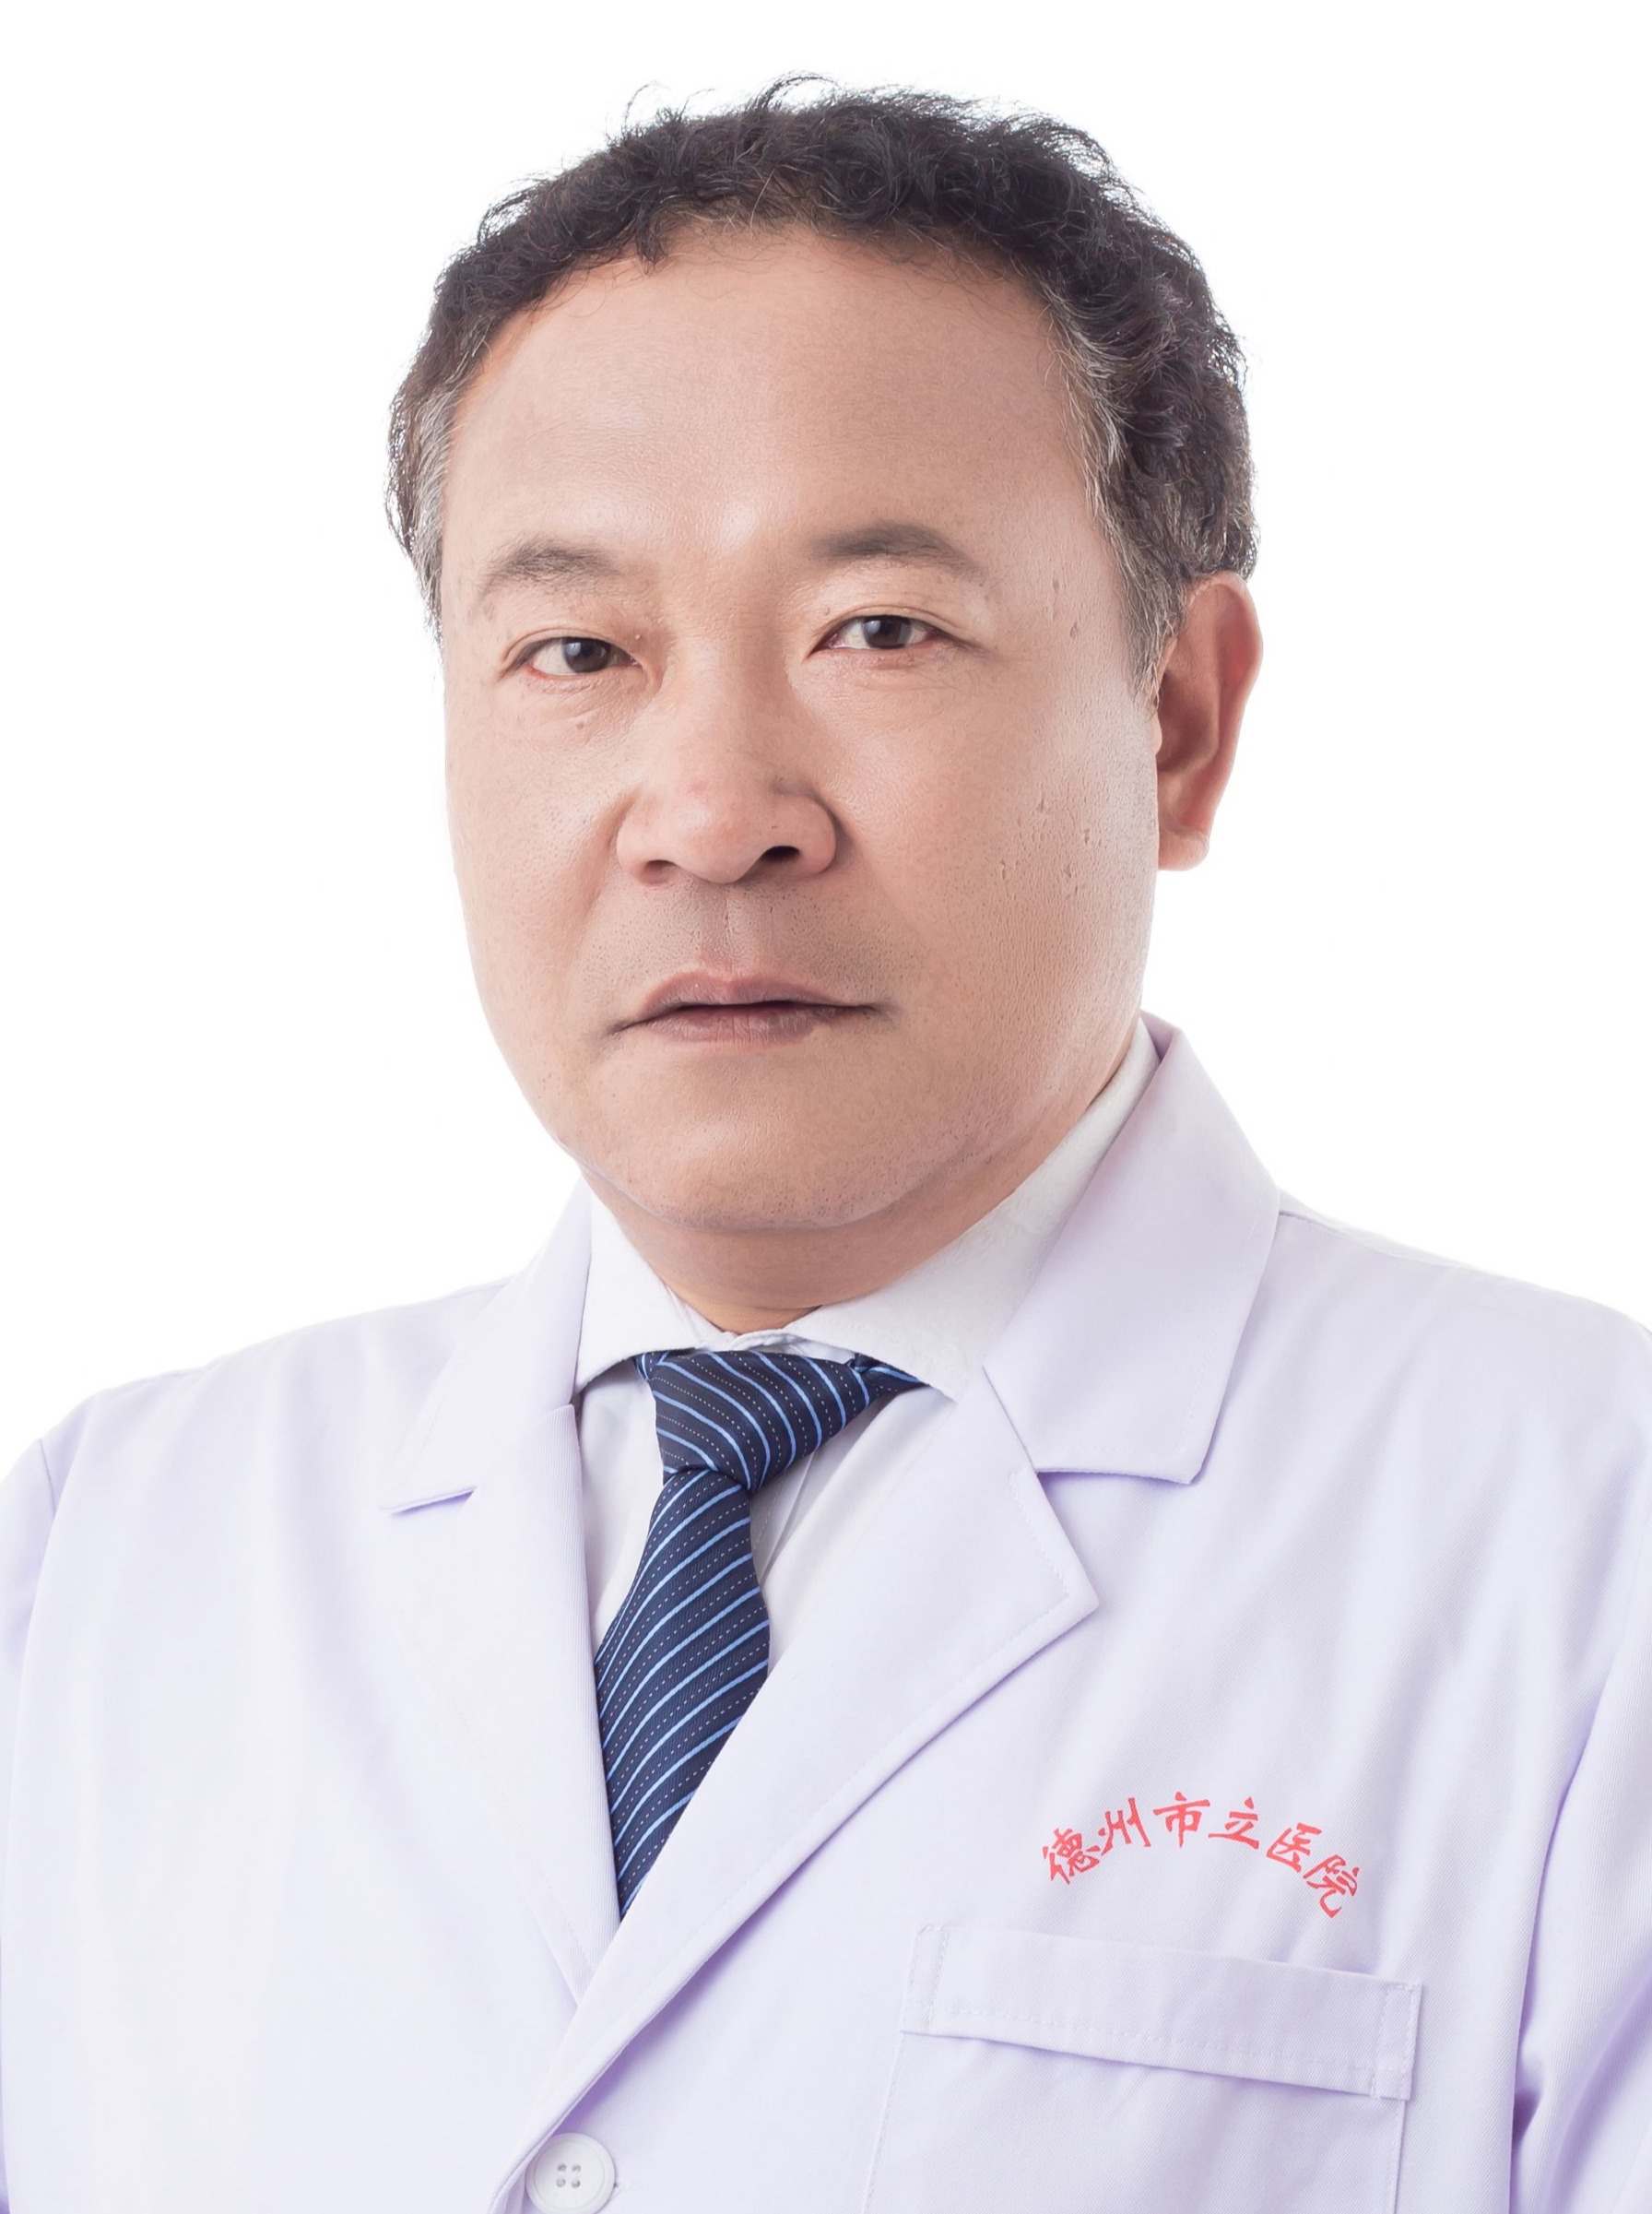 肾内科 副主任医师 2005年于北京协和医院肾内科进修一年，长期从事肾内科常见疾病的诊断及治疗工作。并独立开展肾穿刺手术逾百例，血液透   